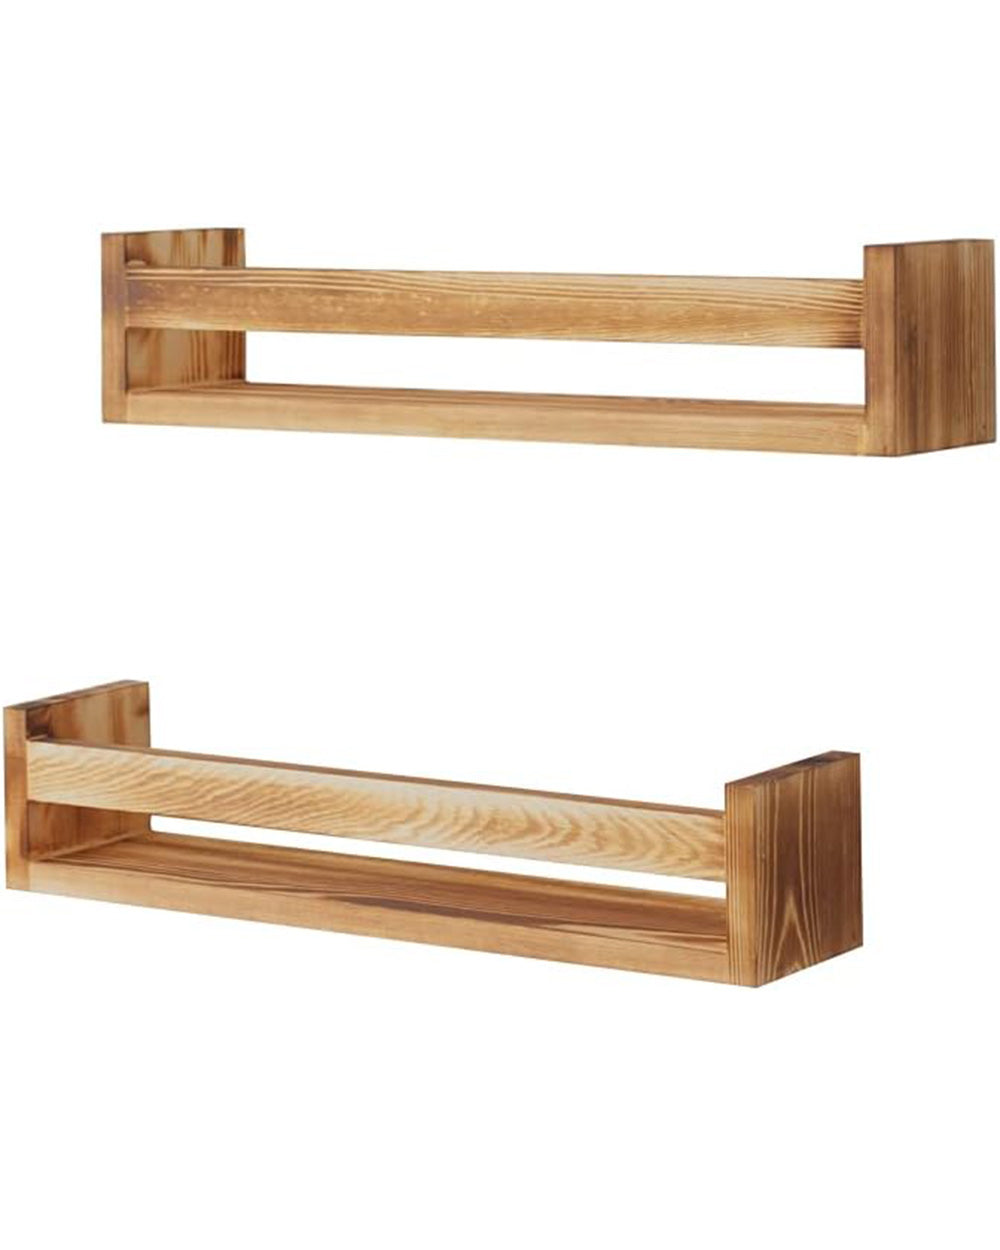 Pair of Rustic Wood Floating Shelves